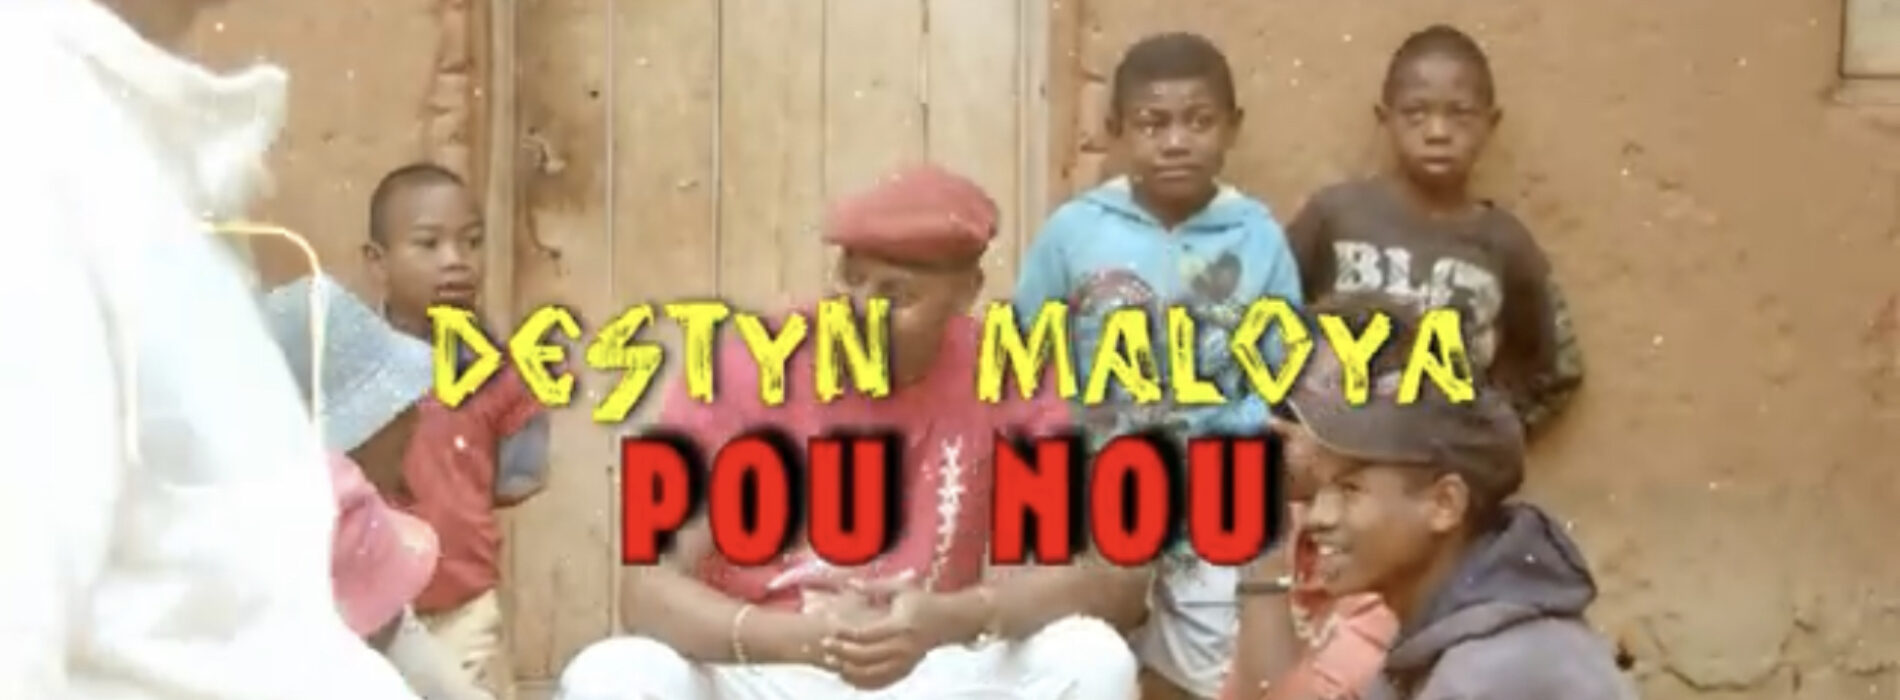 Destyn maloya – « pou nou  » (clip officiel) – Juin 2022